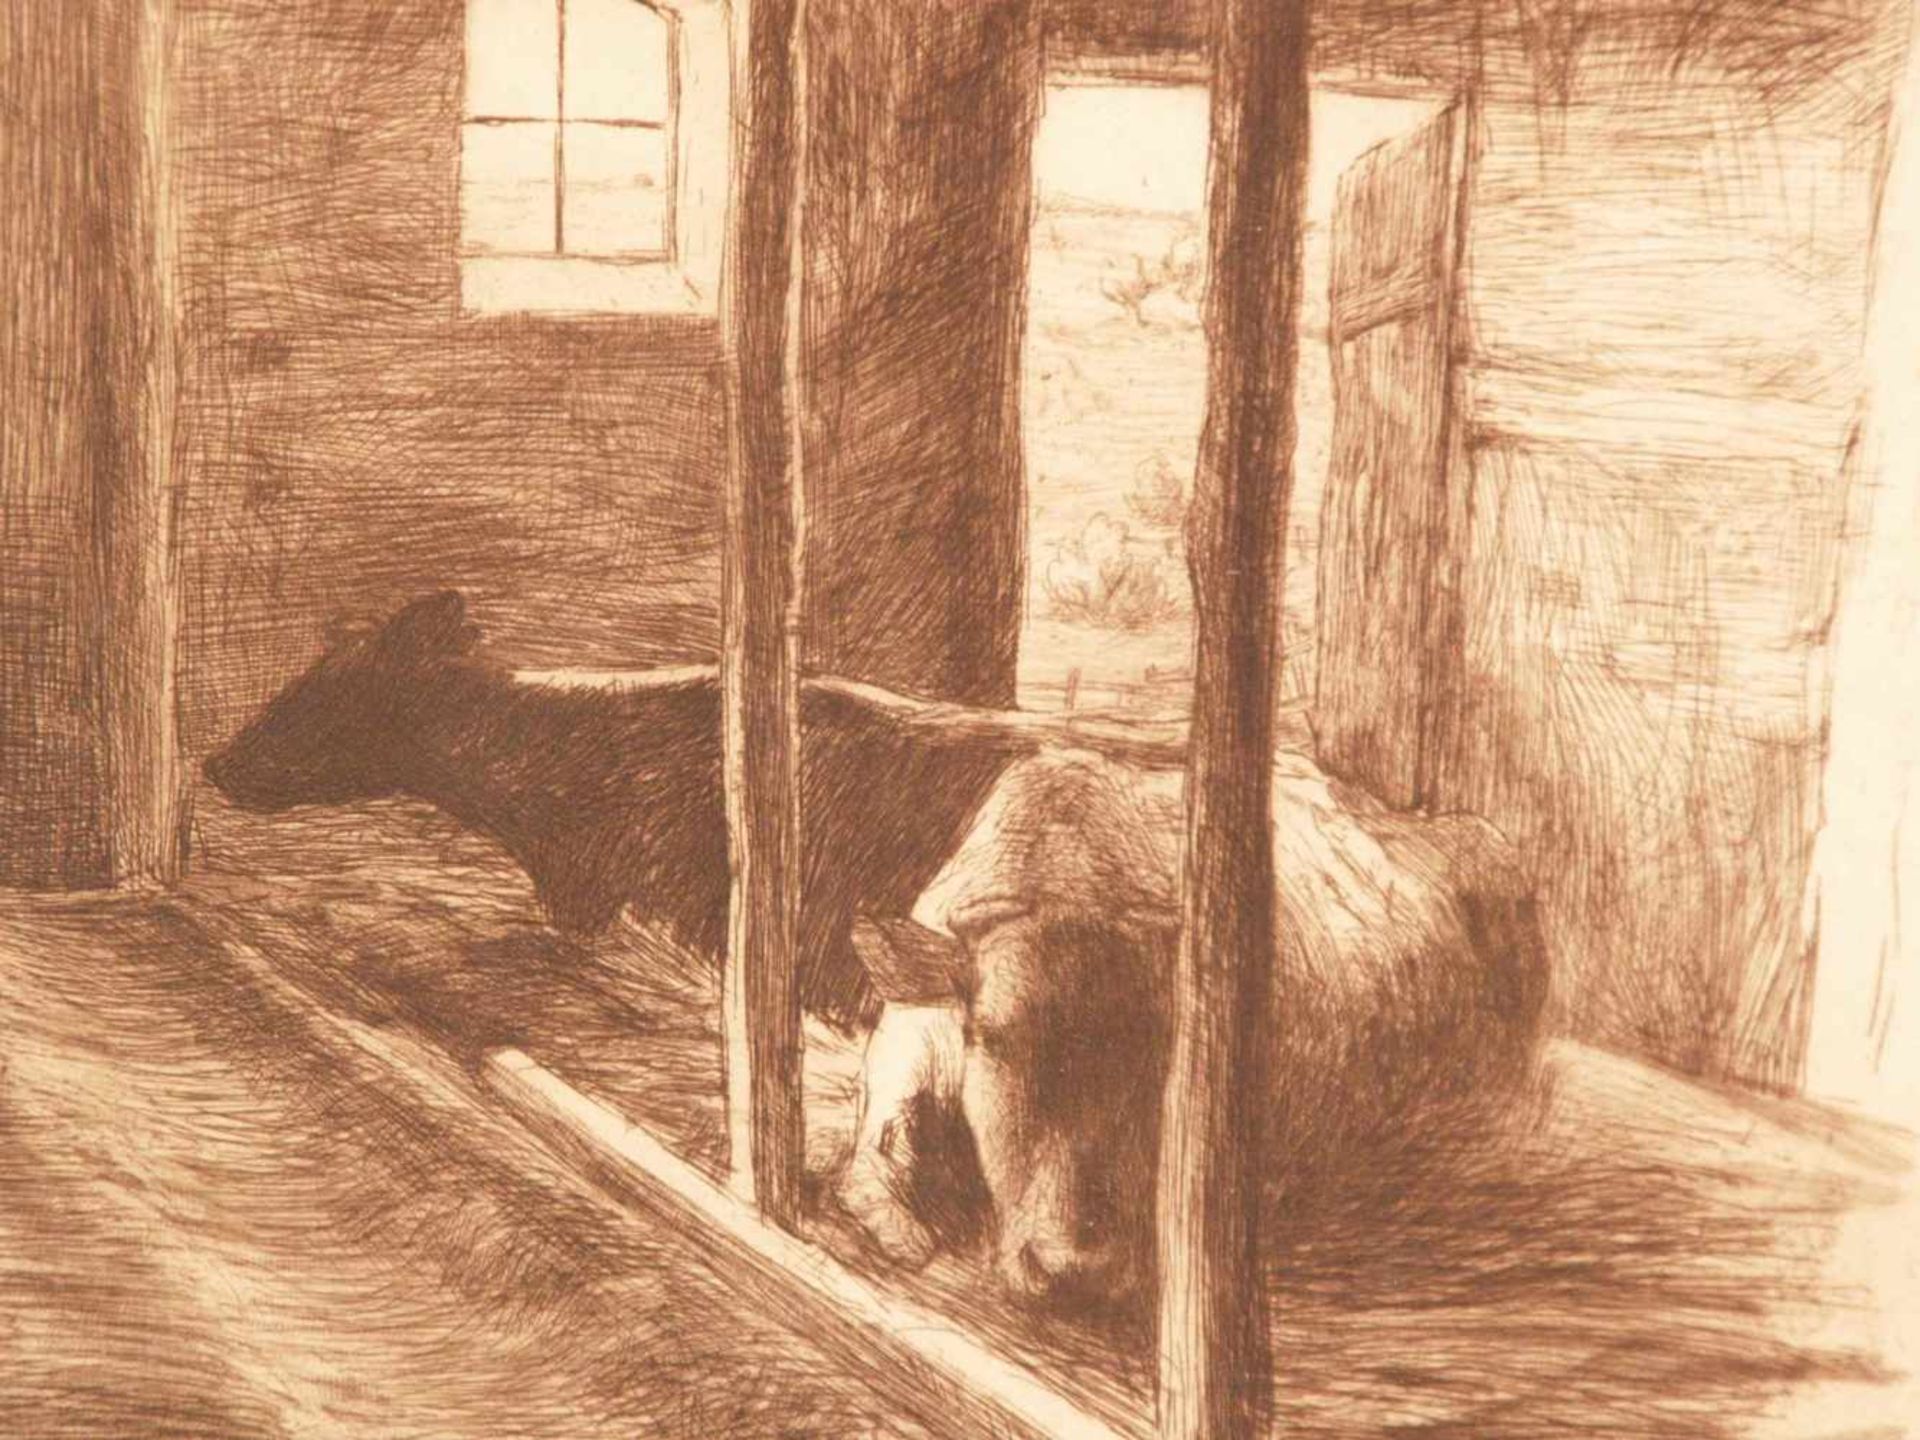 Eickmann, Heinrich (1870 Nienhausen bei Lübeck-1911 Berlin) - "Im Kuhstall", Originalradierung, - Bild 5 aus 5